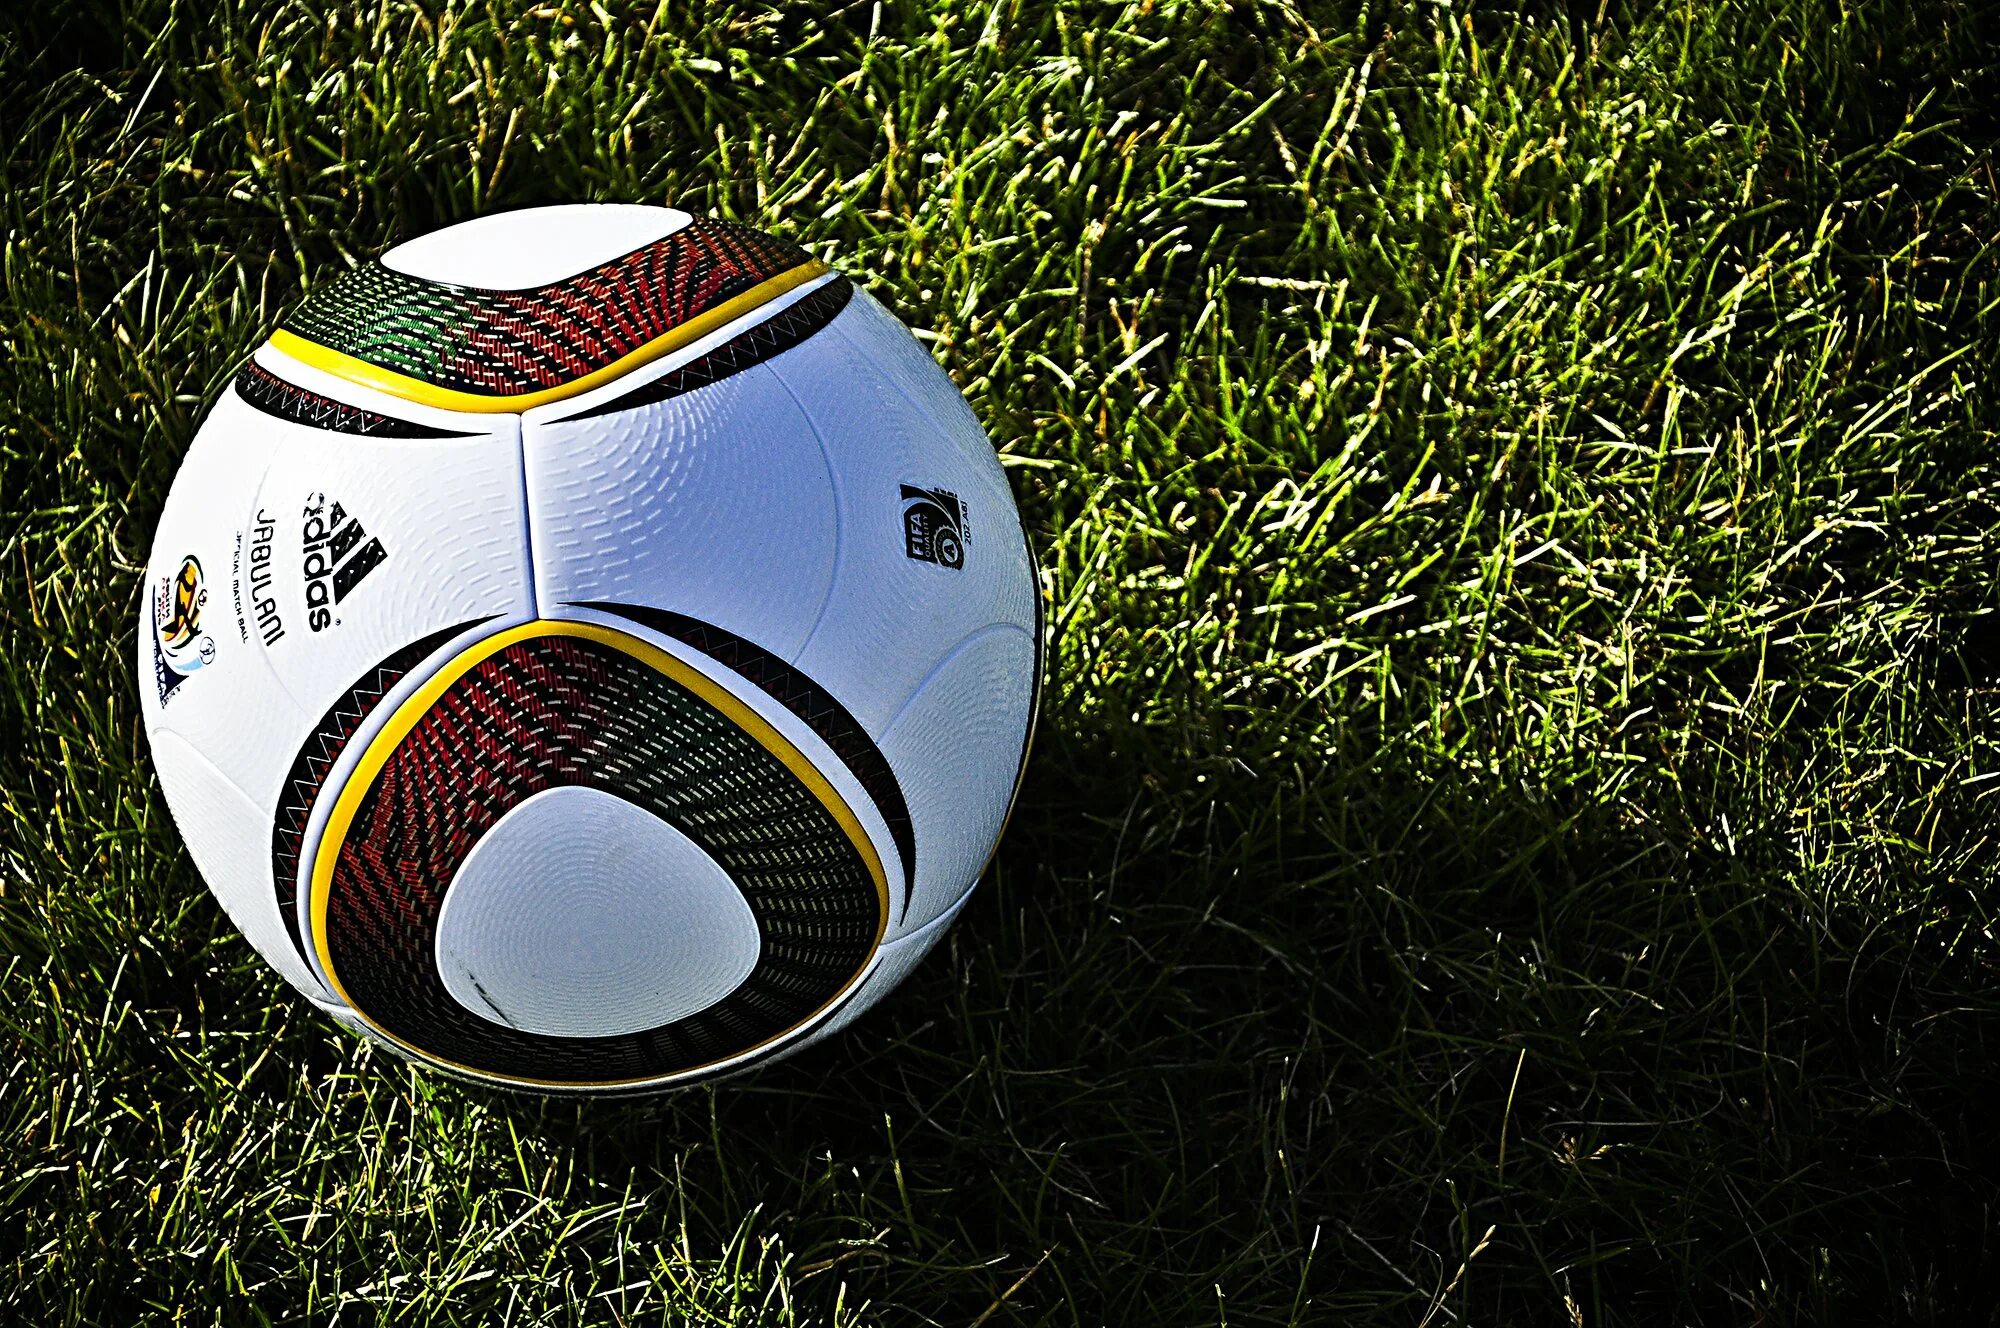 1 мяч в мире. Adidas Jabulani. Adidas Jabulani Ball. Футбольный мяч Jo’bulani фирмы adidas. Джабулани 2010.